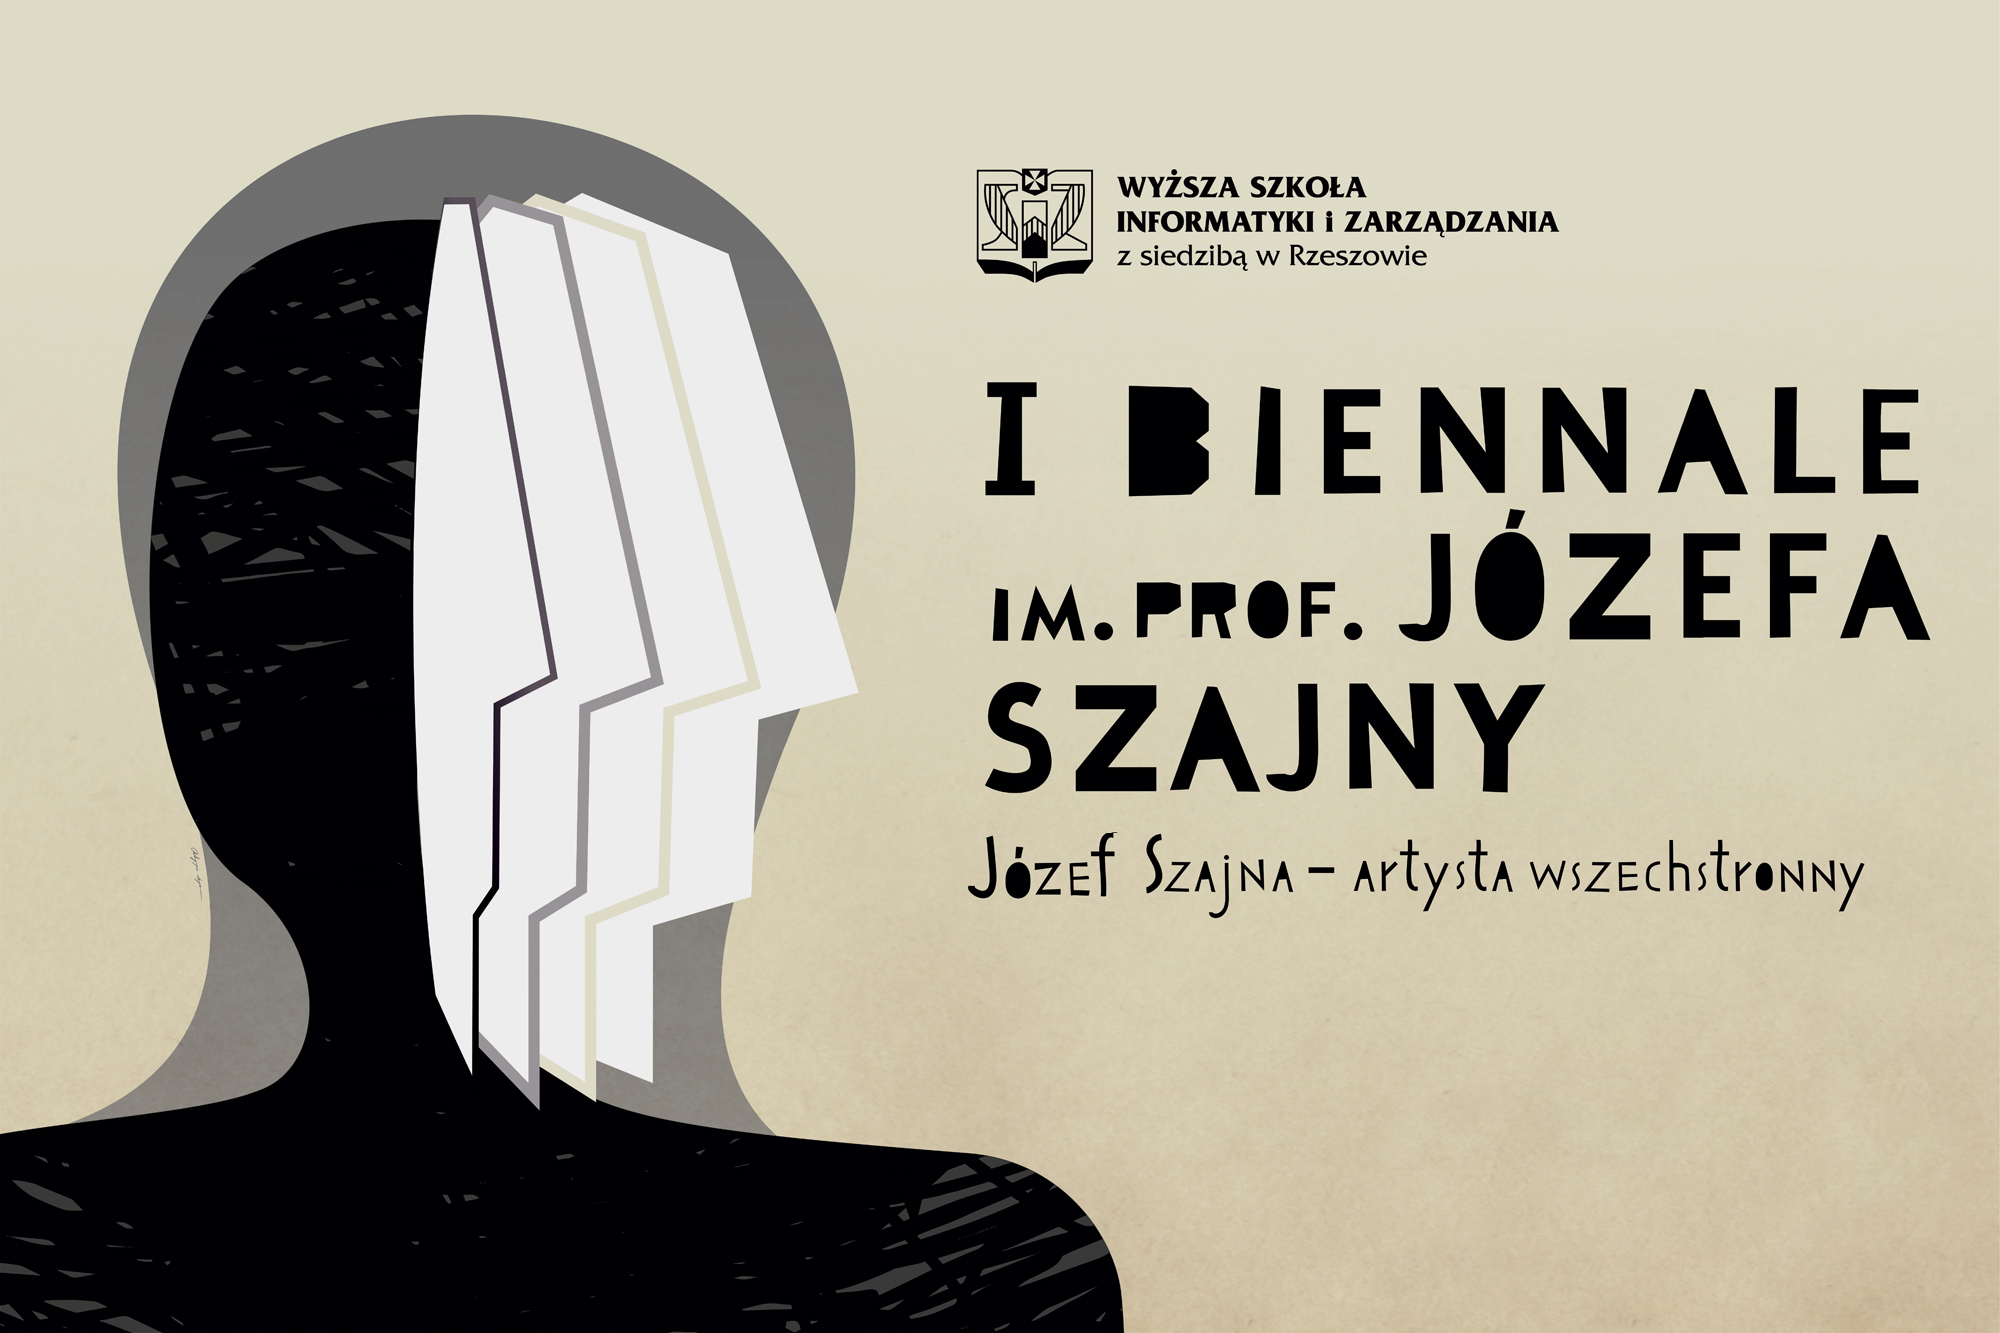 I Biennale im. prof. Józefa Szajny – znamy już prace zakwalifikowane do wystawy